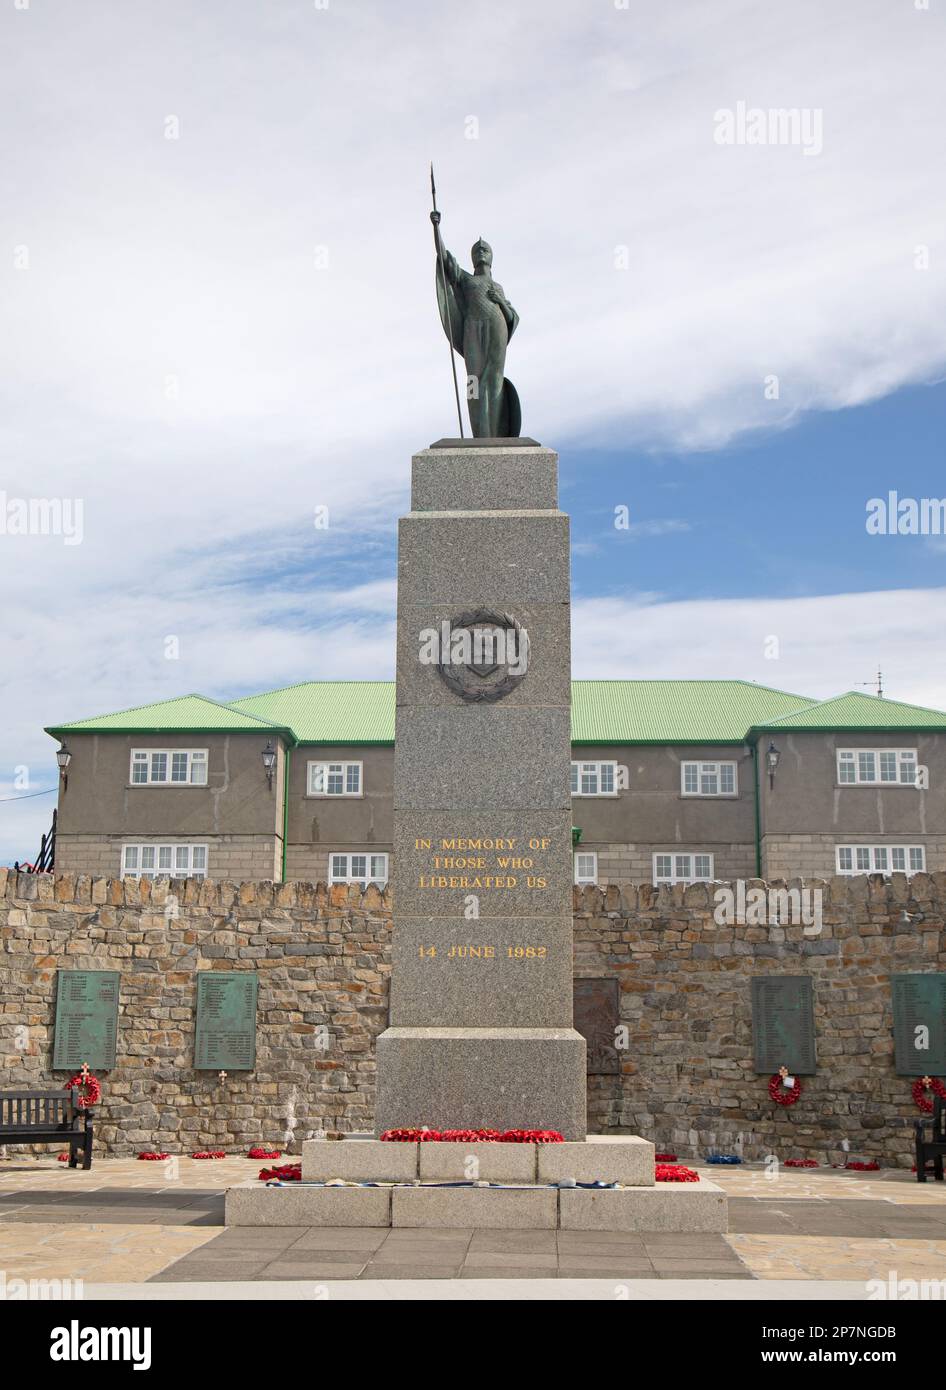 El Memorial de la Liberación en Stanley, Islas Malvinas, conmemorando a las Fuerzas Británicas que lucharon en la guerra de las Malvinas de 1982. Foto de stock